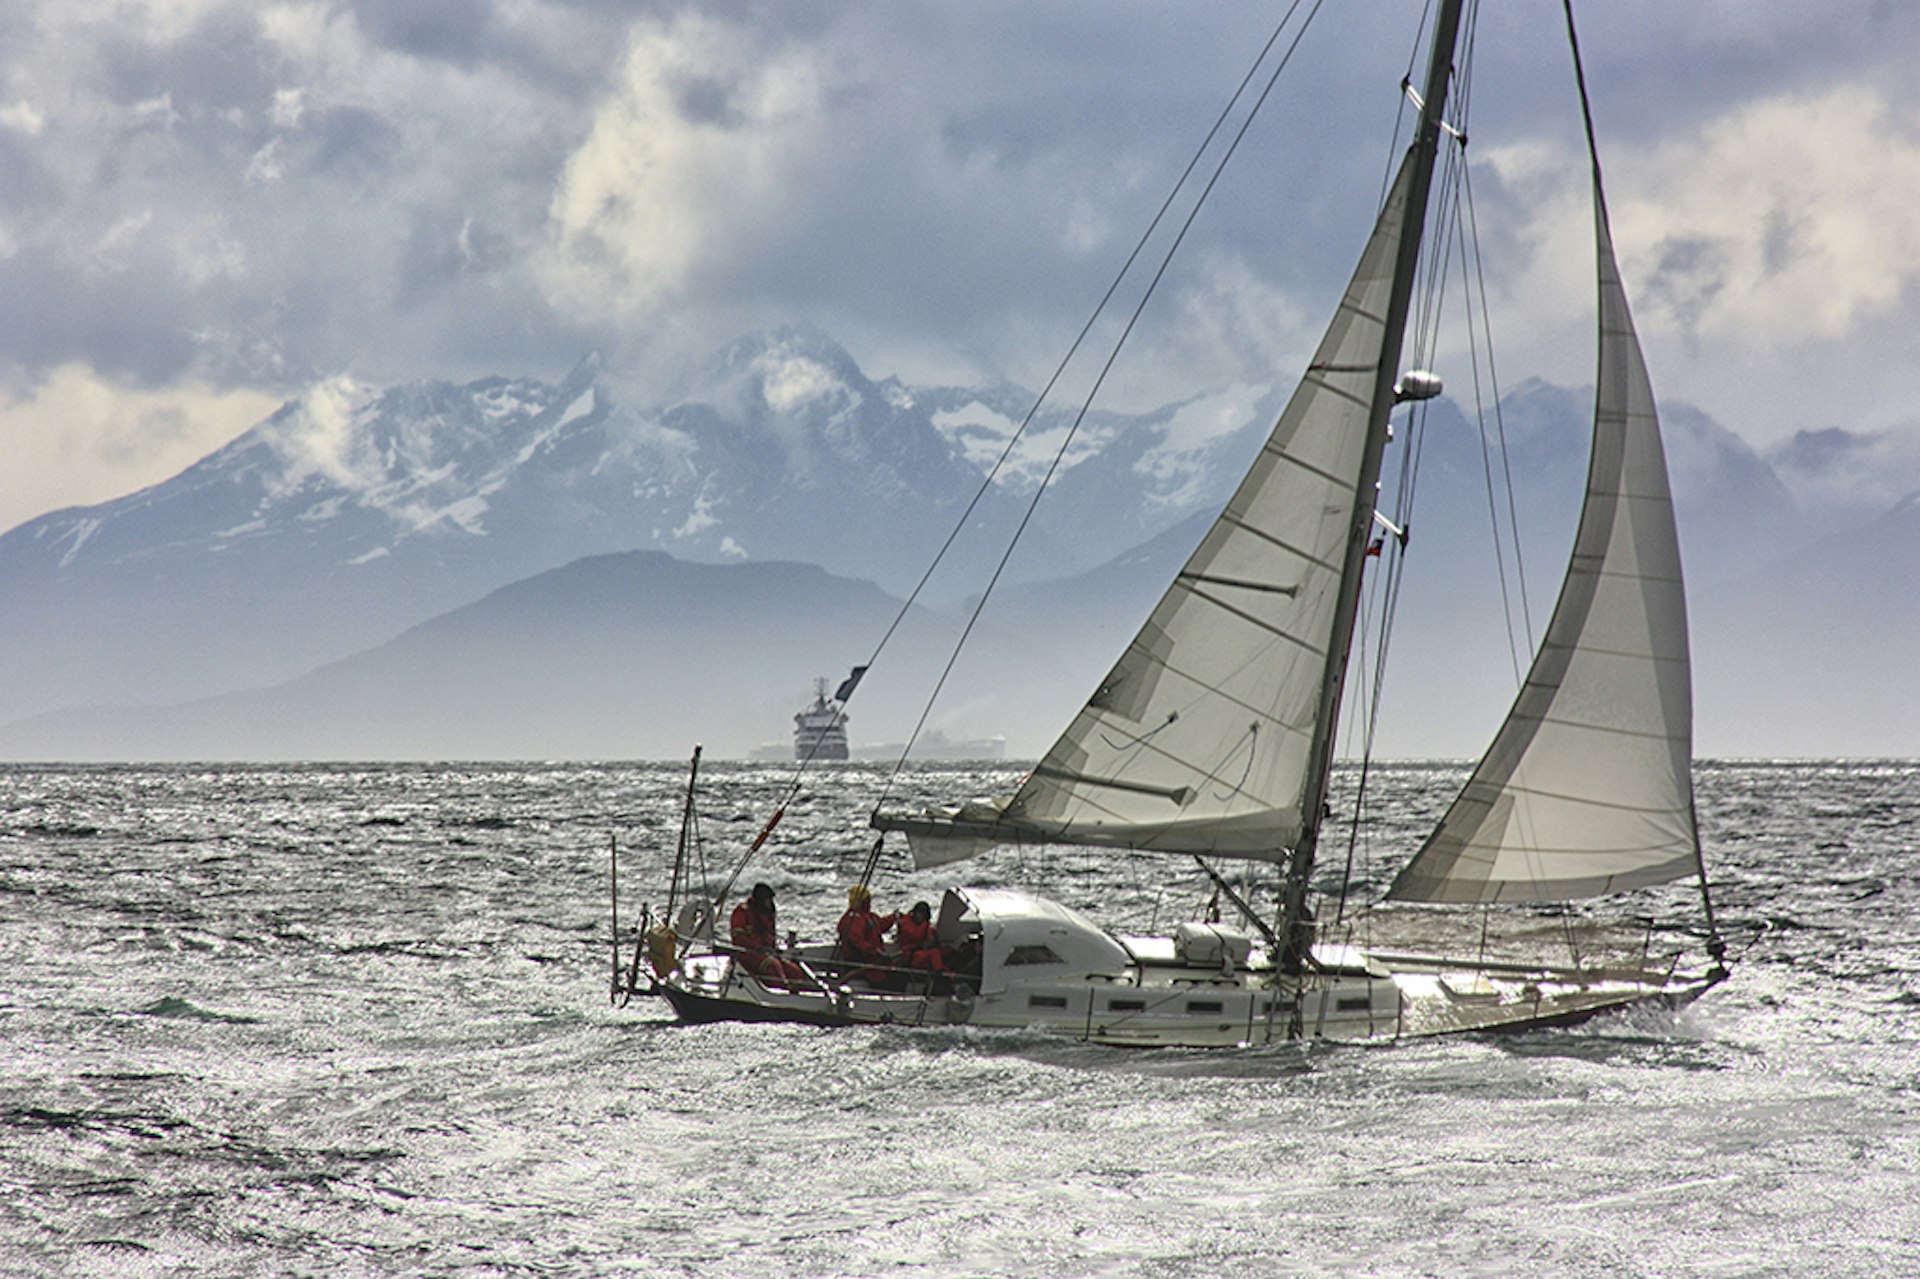 Intrepid seafarers can explore Tierra del Fuego by sailboat © Marcelo Nacinovic